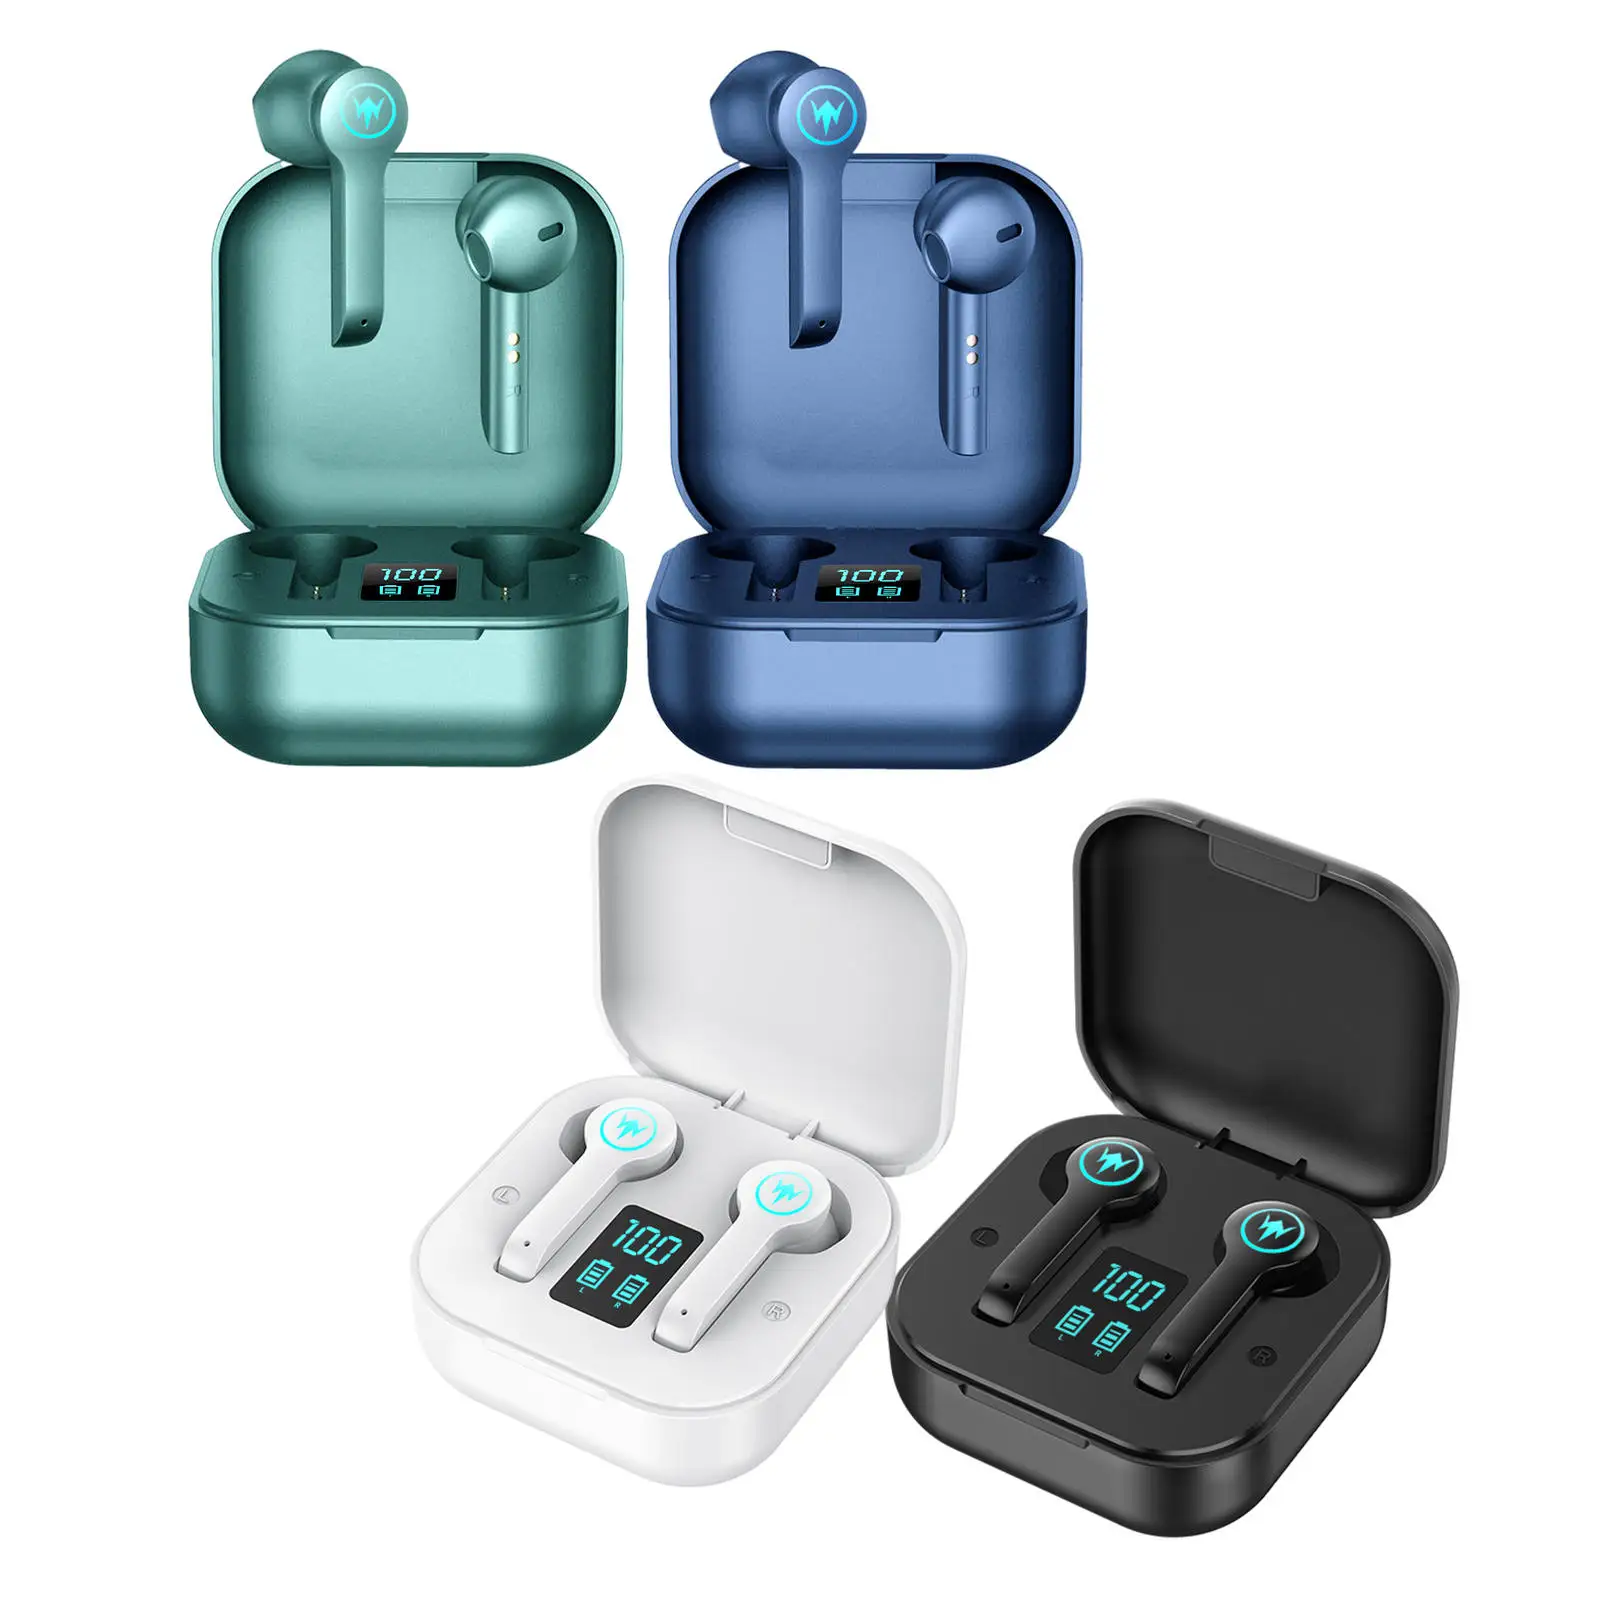 Waterproof Digital Display HiFi Sound Automatic Pairing in Ear Headphone Earbuds Bluetooth 5.0